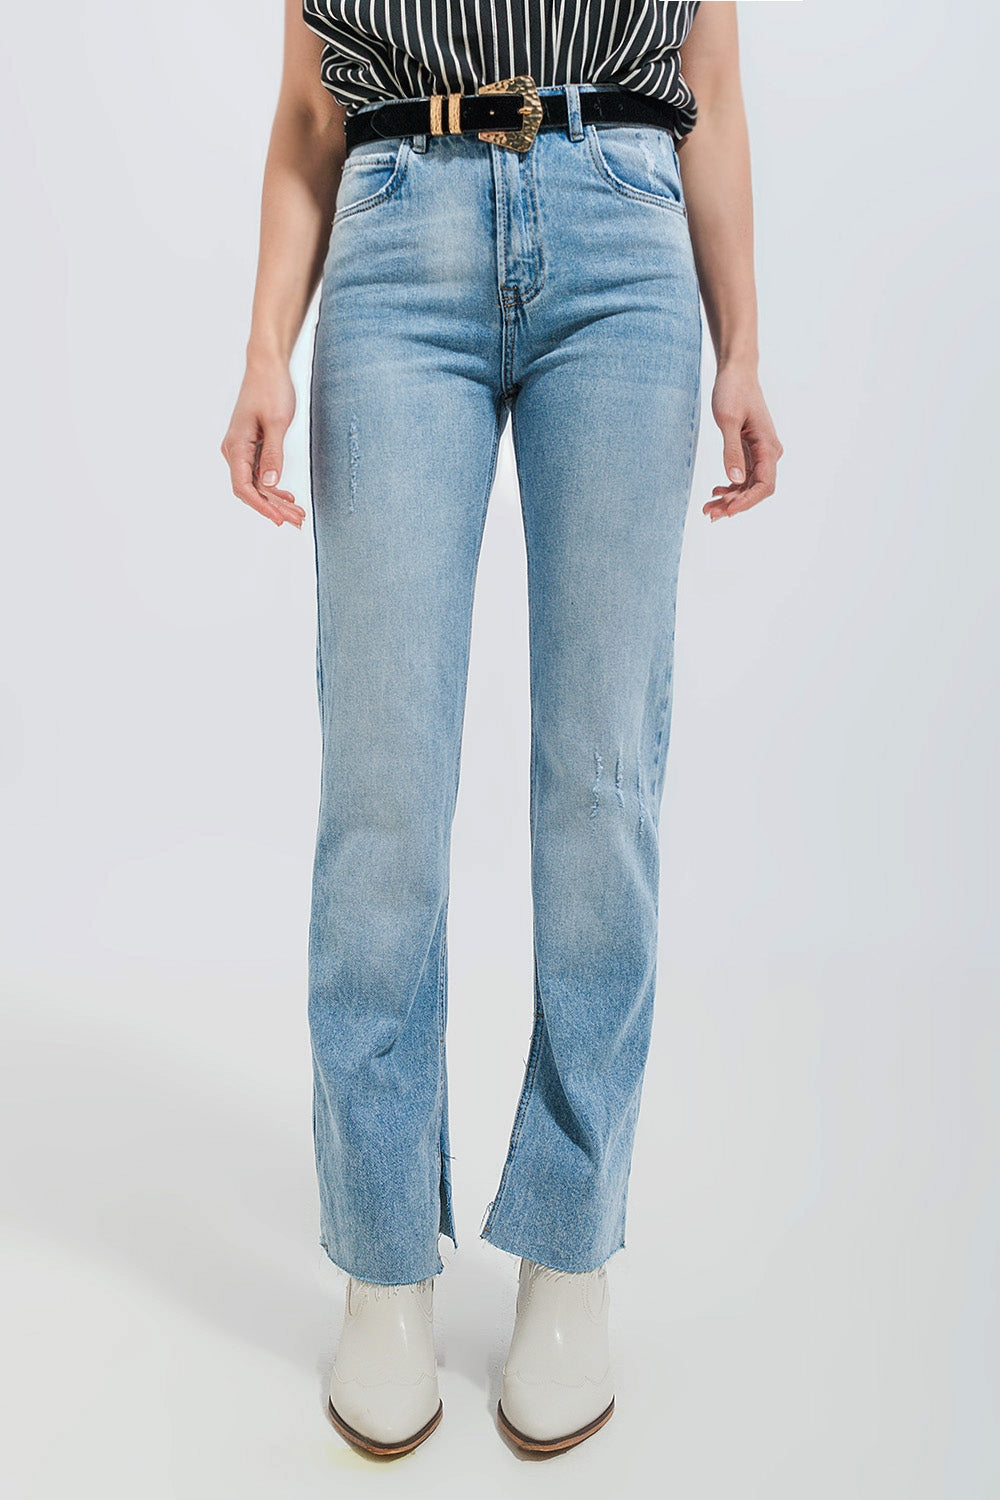 Q2 Jeans stretch lavaggio chiaro con fondo grezzo